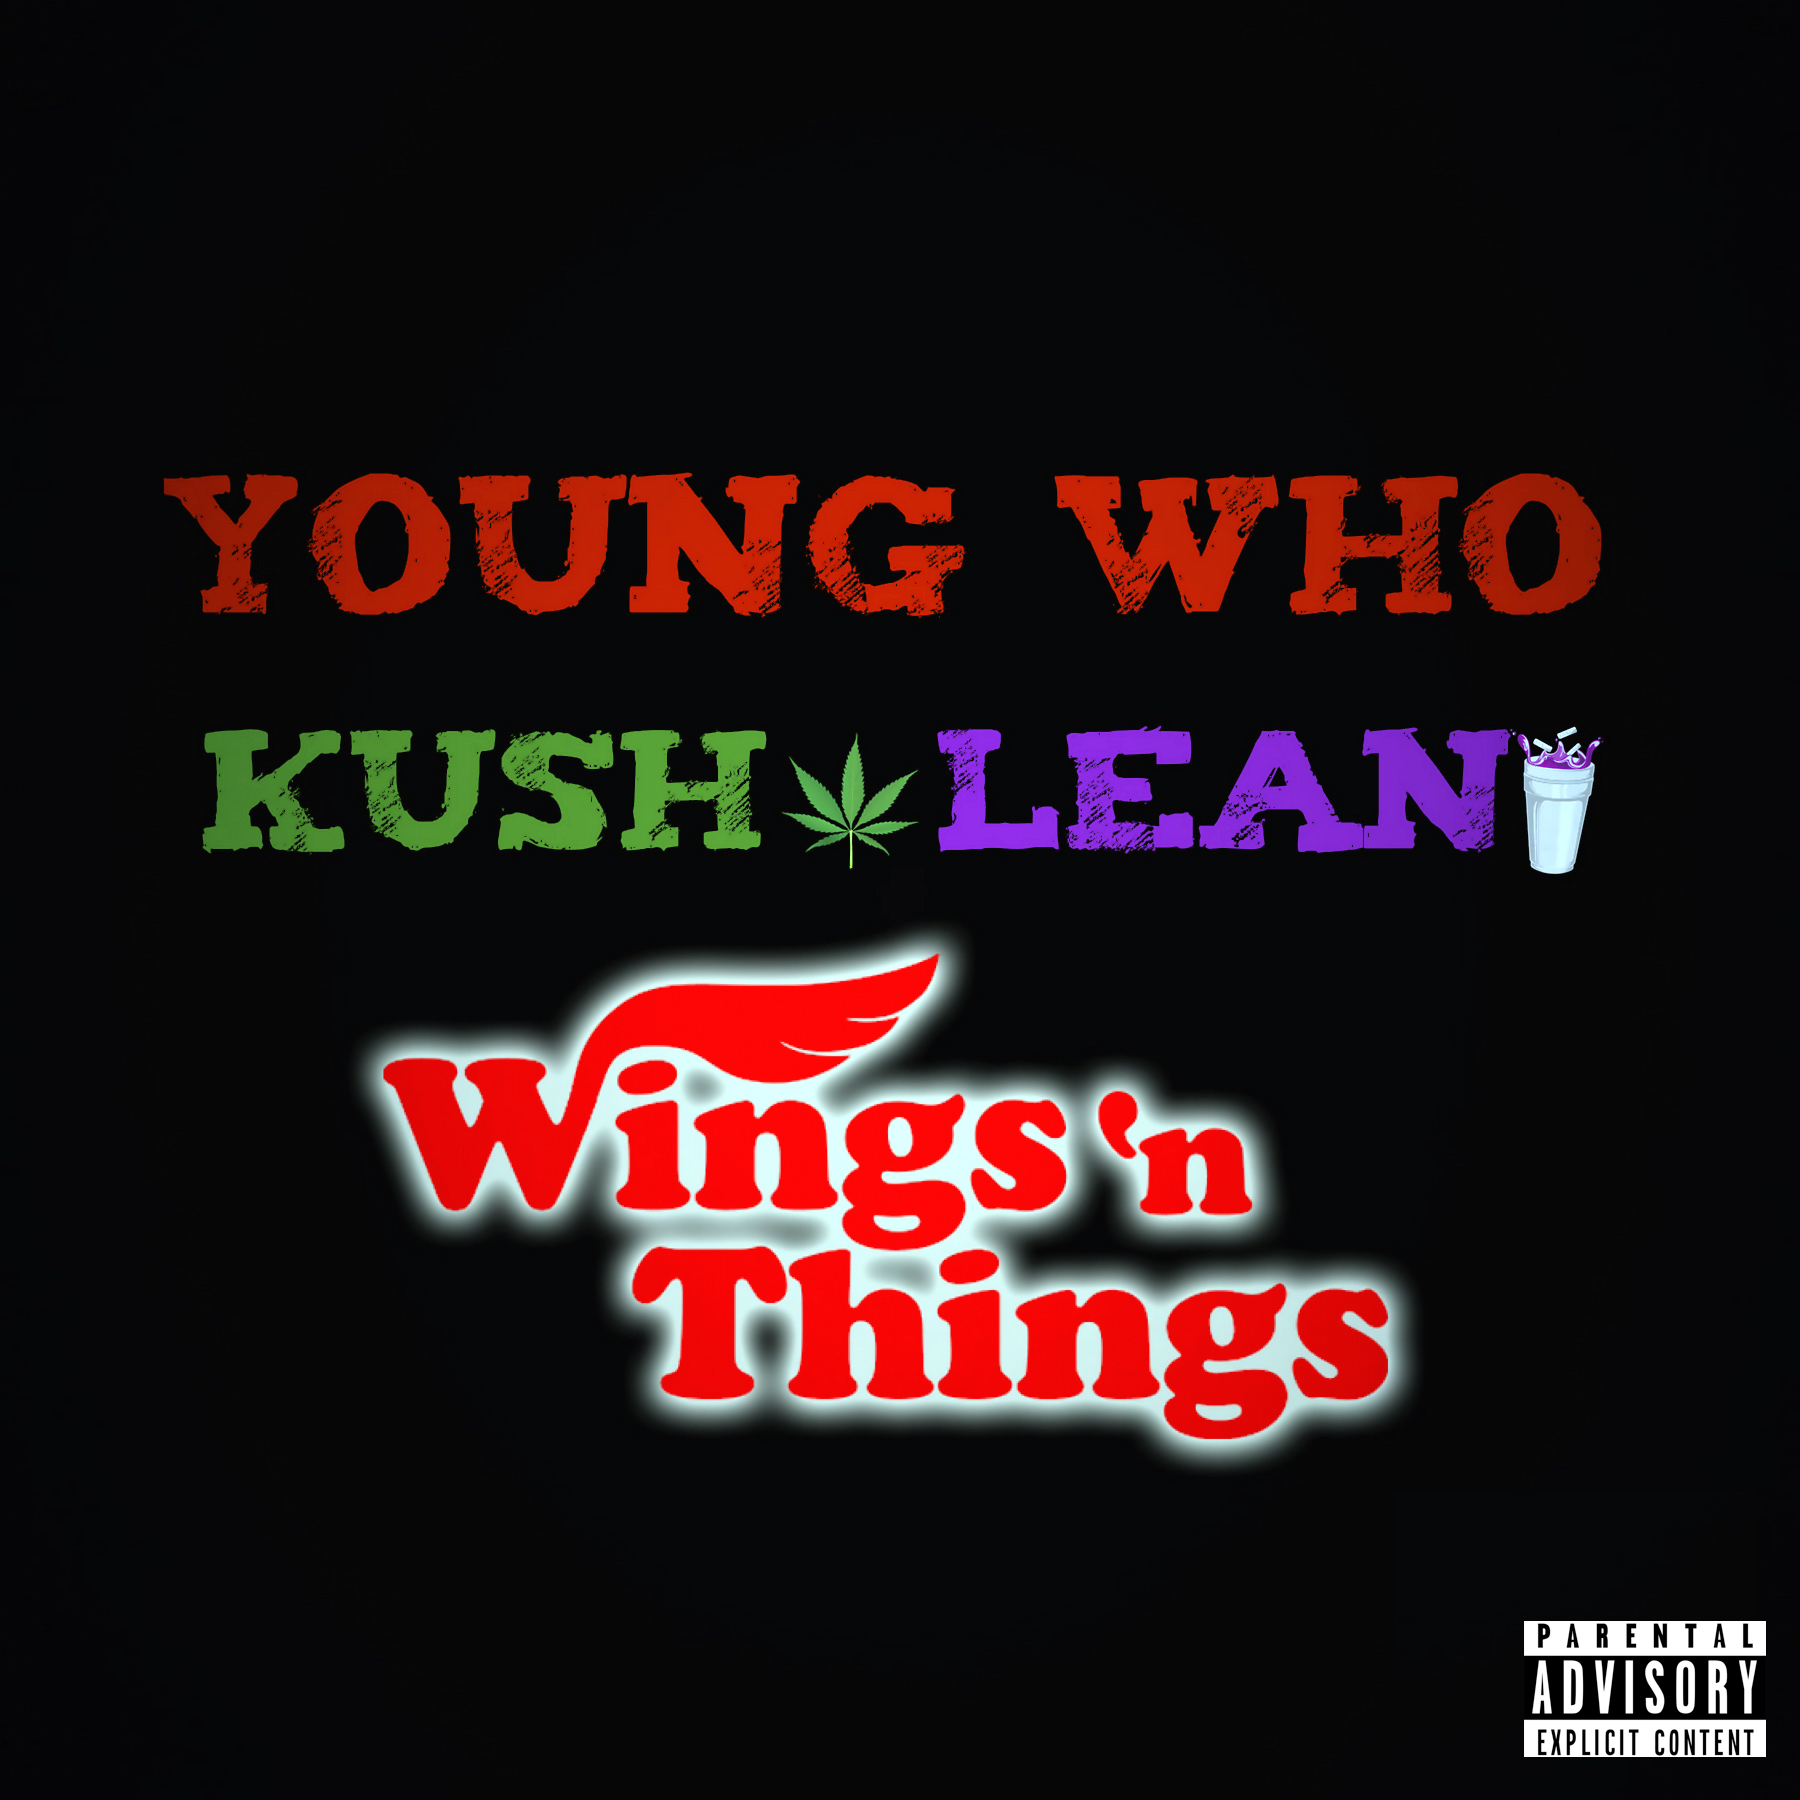 Kush, Lean & Wings 'n Things